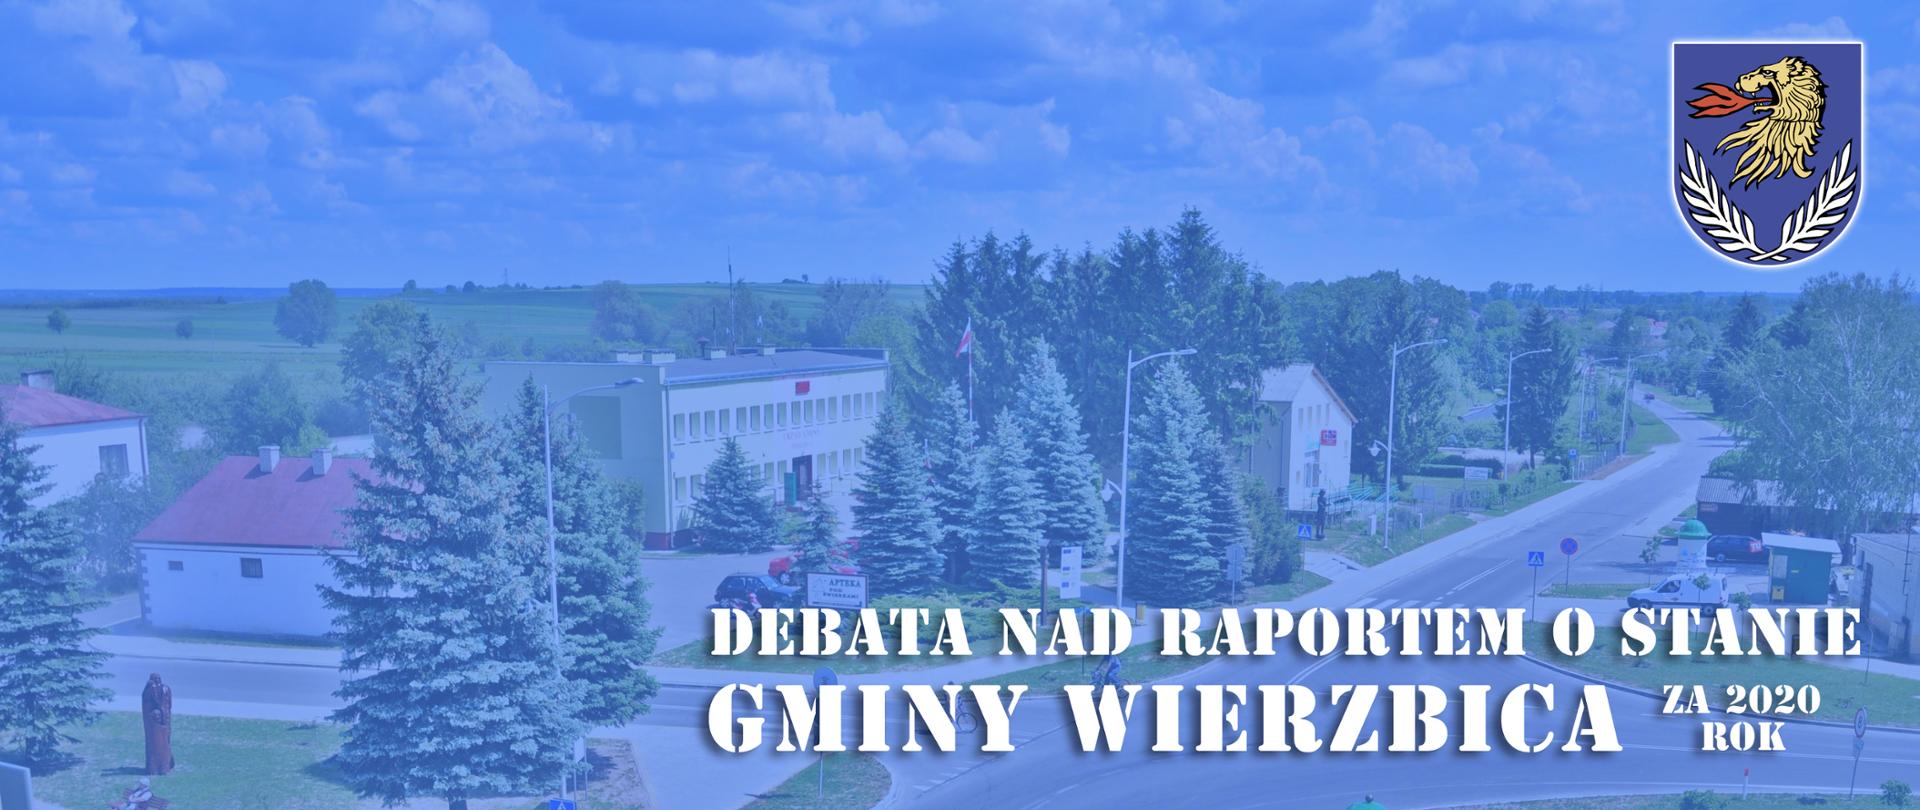 Ilustracja przedstawia panoramę Gminy Wierzbica, herb gminy: złotego lwa ziejącego czerwonym ogniem, oraz 2 gałązki wierzbowe, oraz napis "Debata nad raportem o stanie Gminy Wierzbica za 2020 rok".